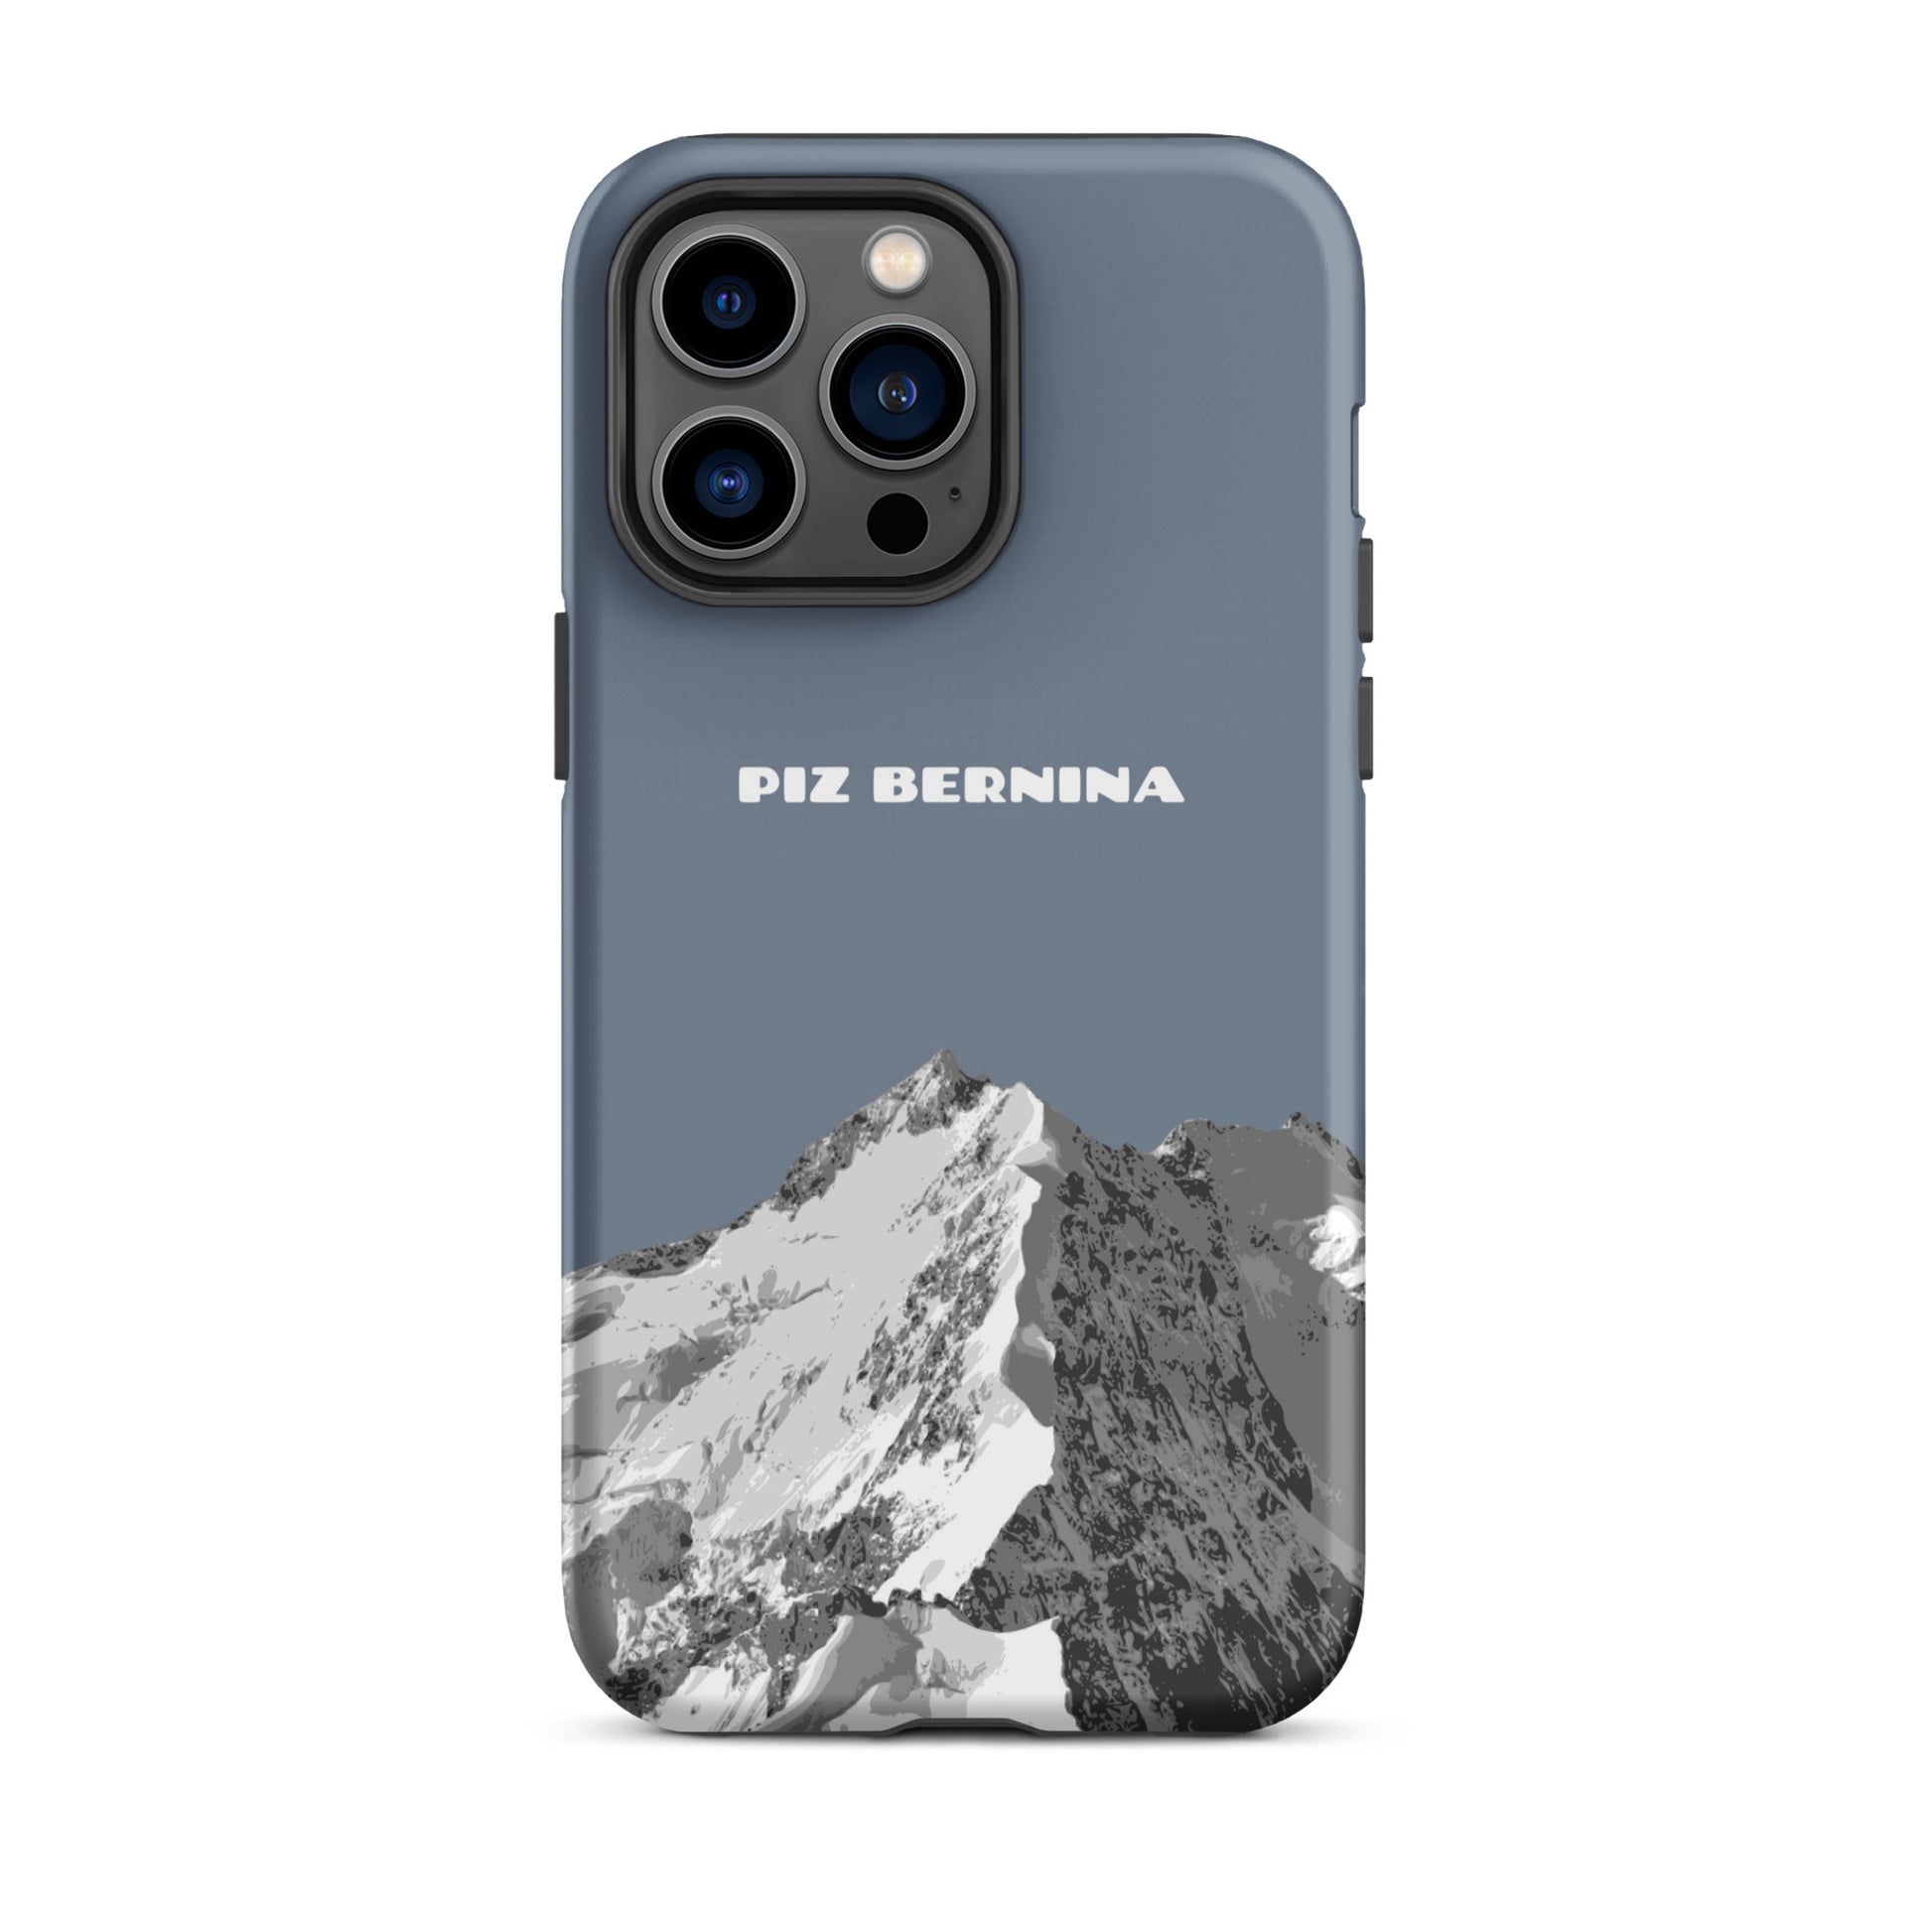 Hülle für das iPhone 14 Pro Max von Apple in der Farbe Schiefergrau, dass den Piz Bernina in Graubünden zeigt.